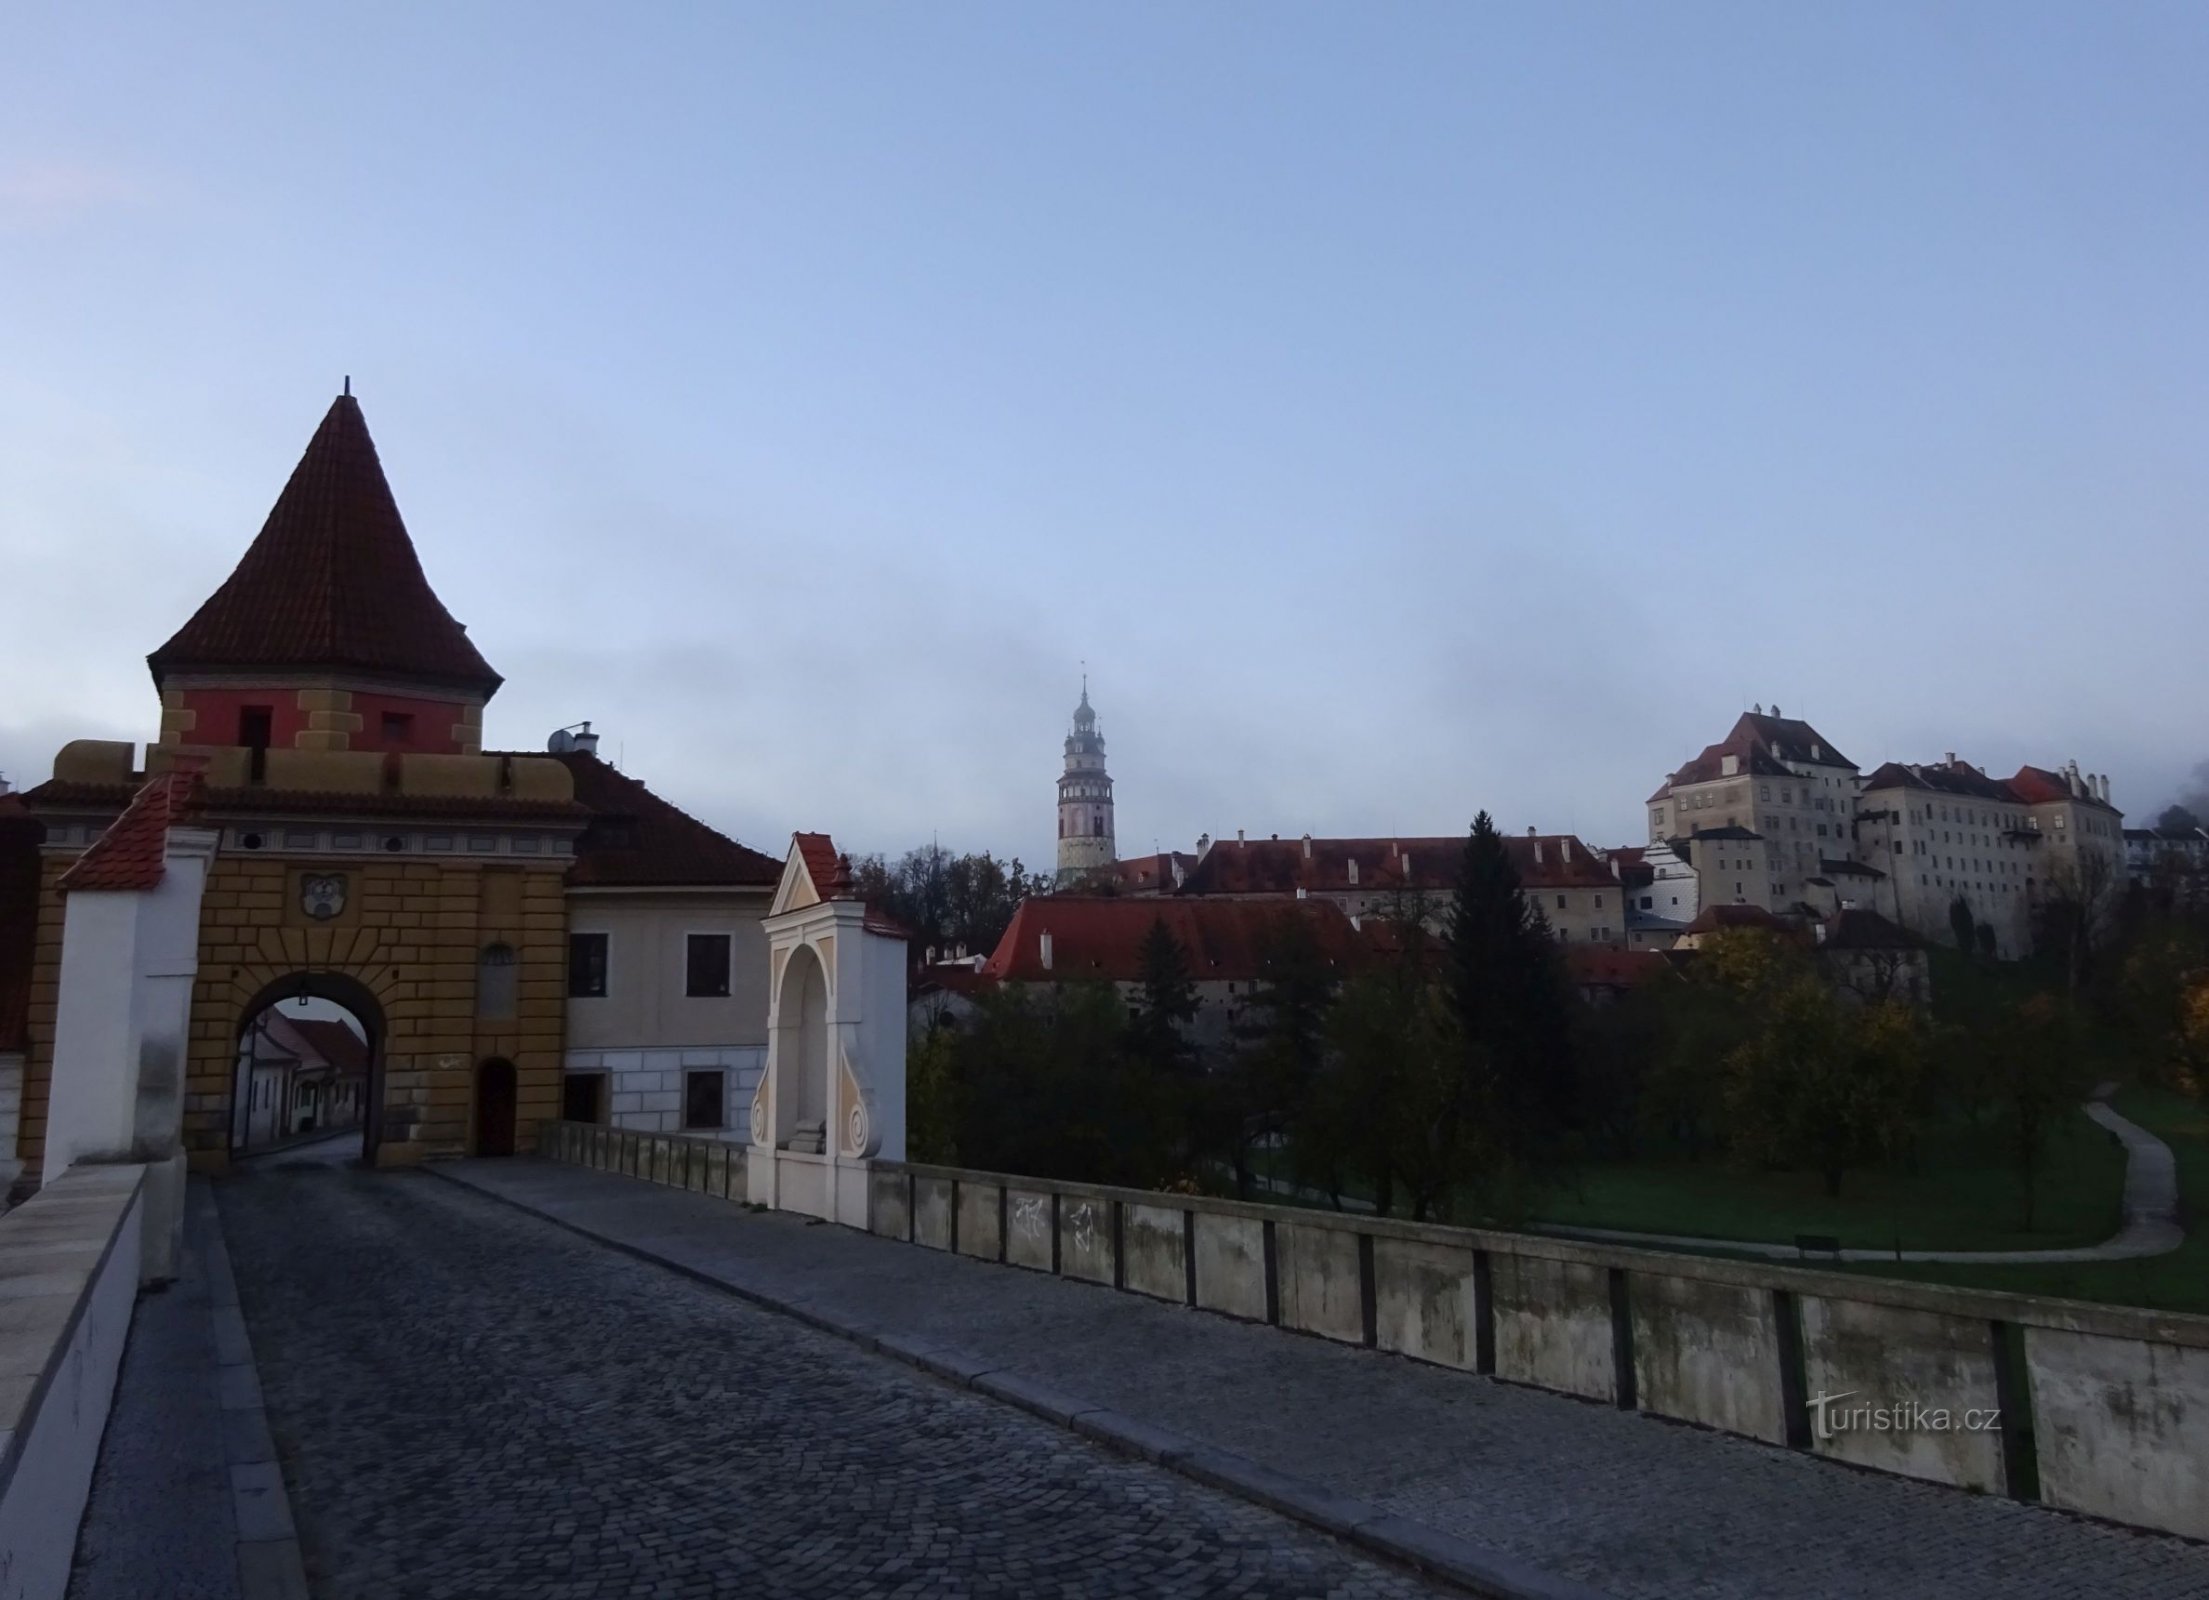 Český Krumlov og Domažlická-porten